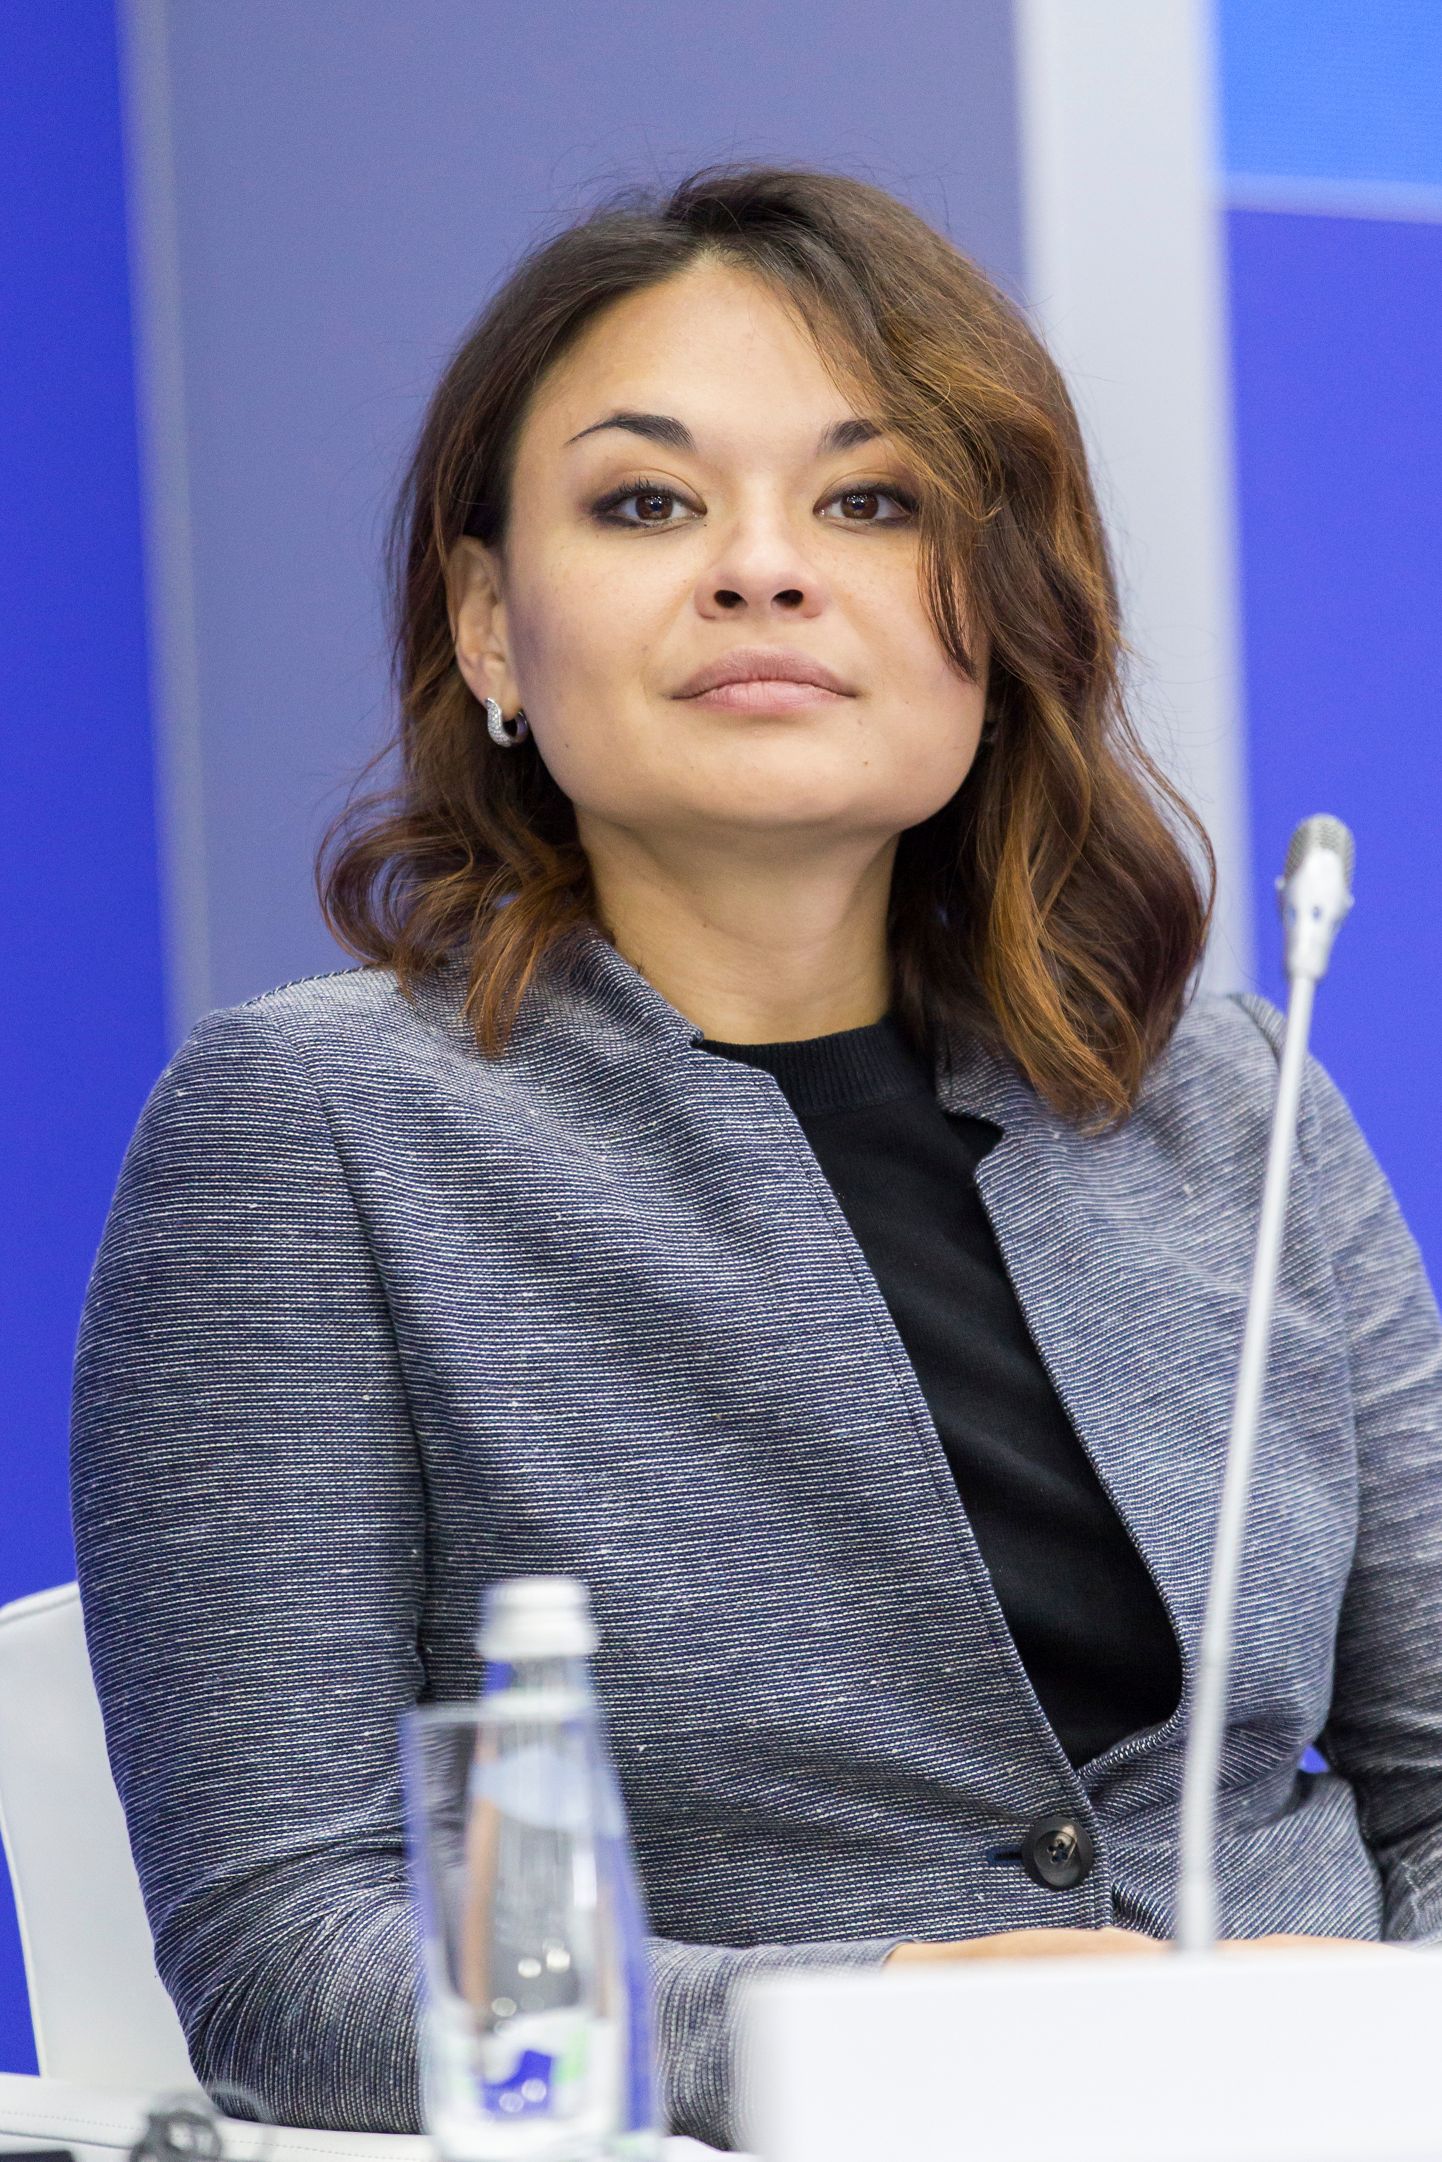 Krievijas aizsardzības ministra Sergeja Šoigu meita Ksenija Šoigu